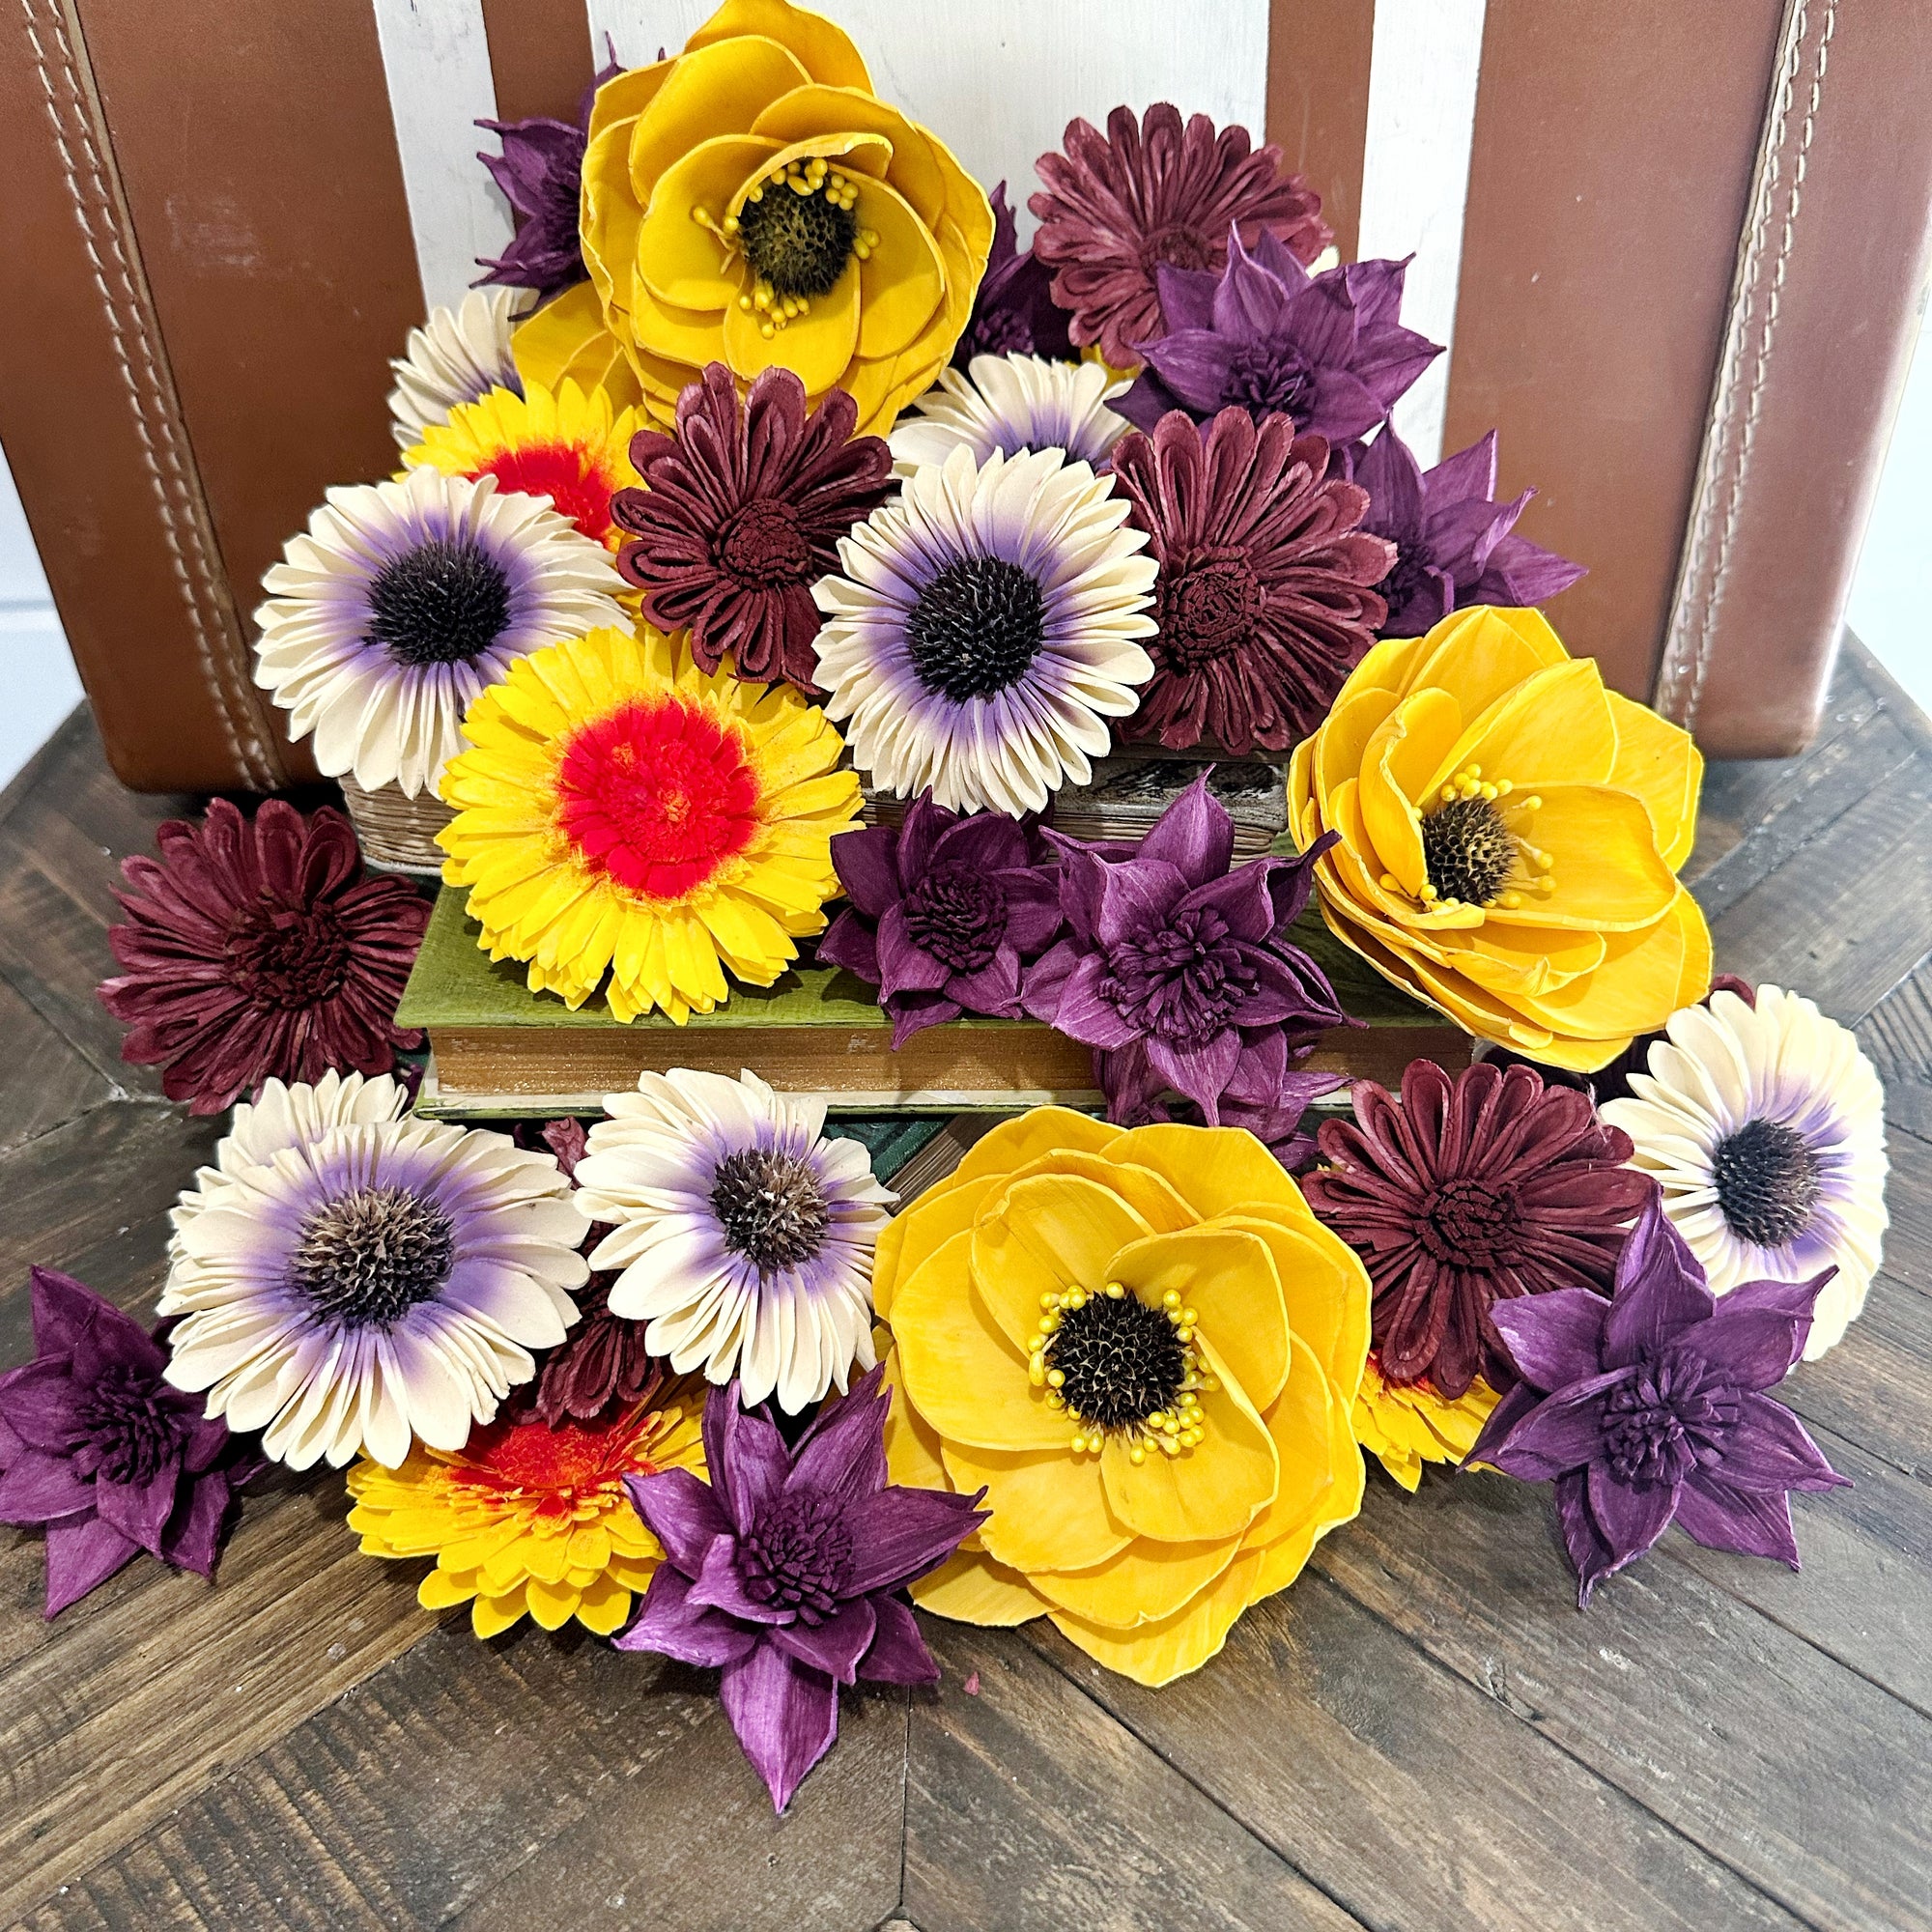 Sunflower Field- dyed sola wood flower assortment